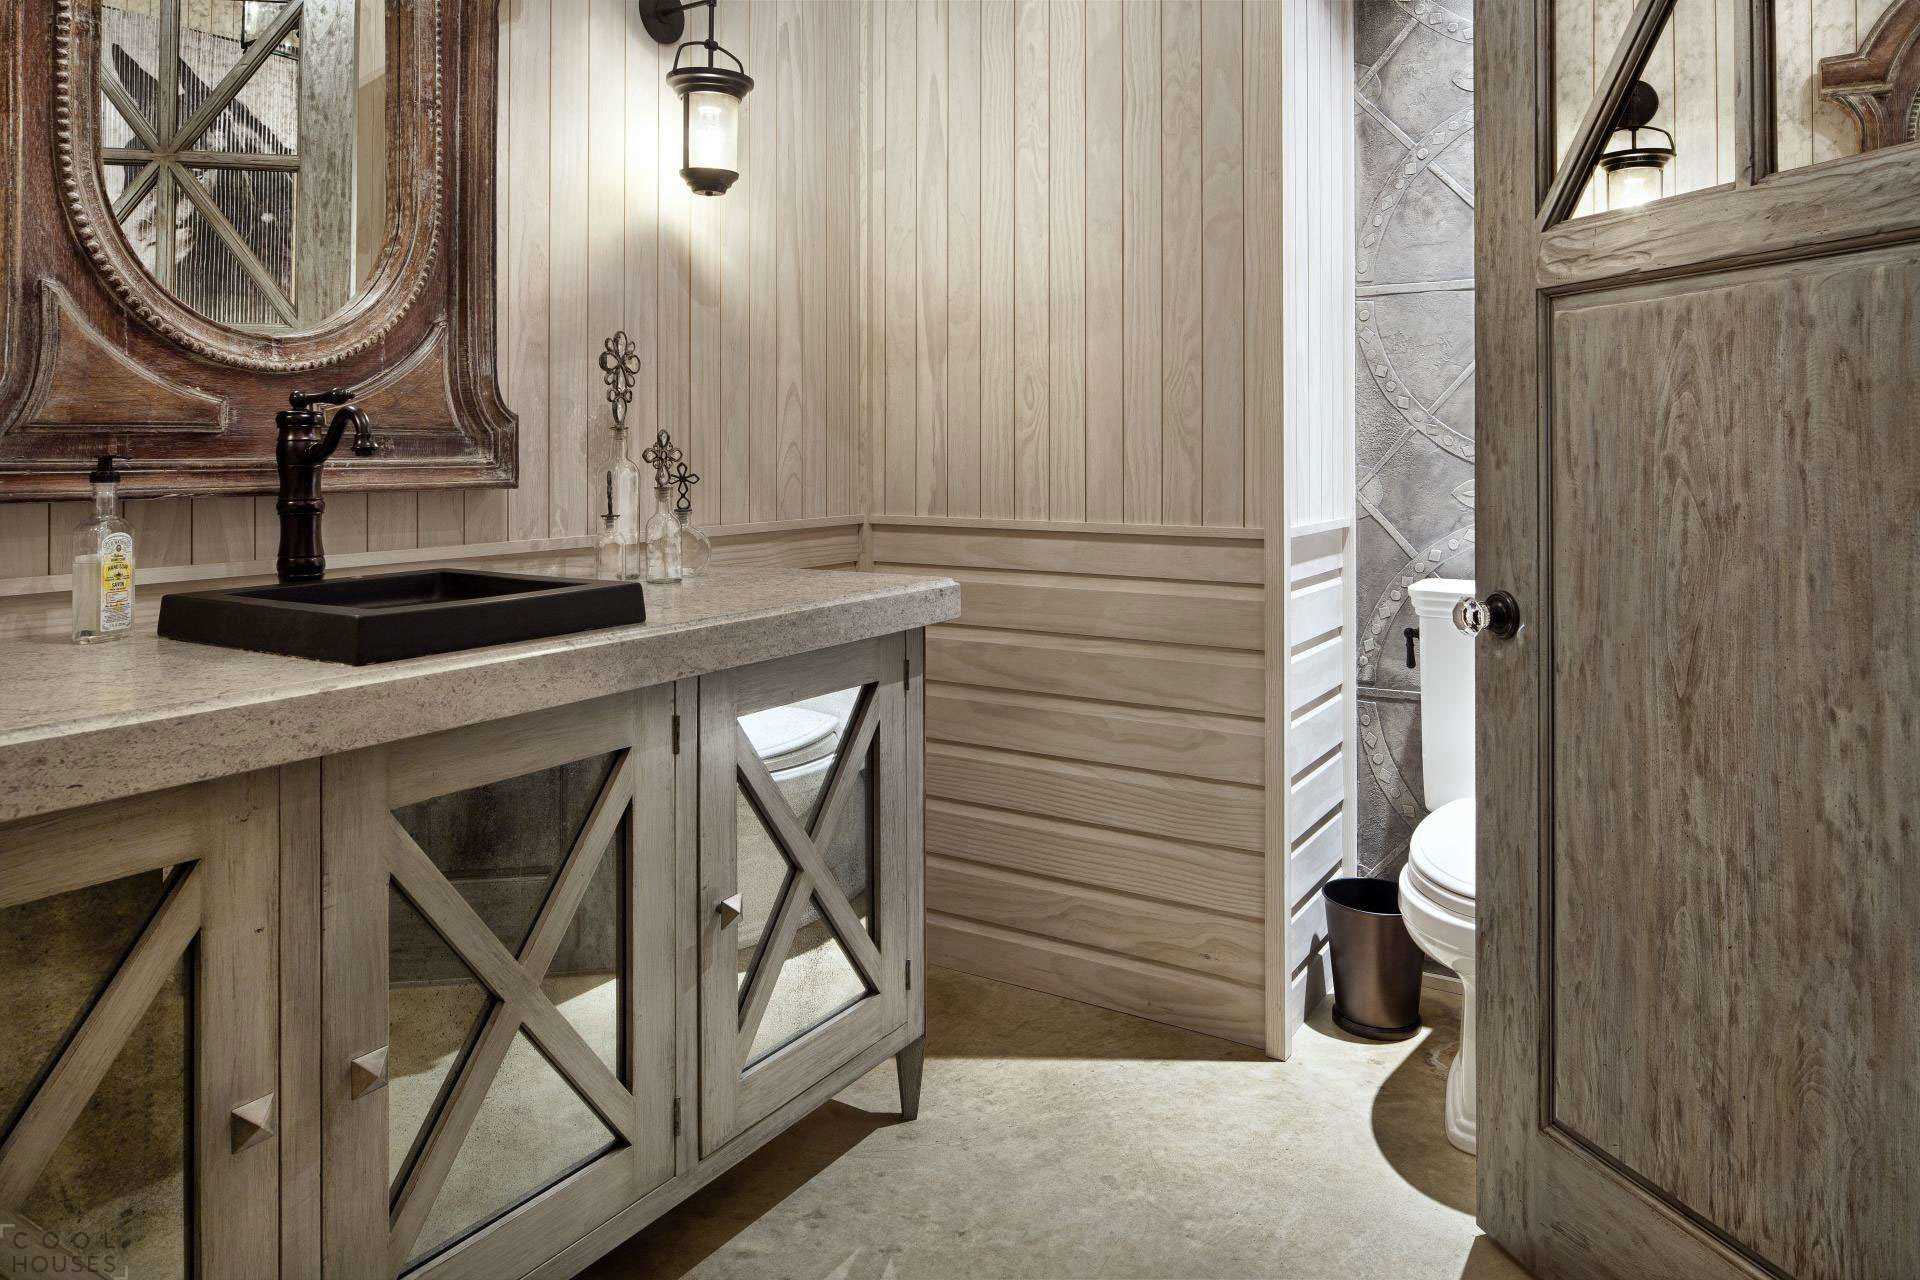 version de l'intérieur de la salle de bains moderne dans une maison en bois